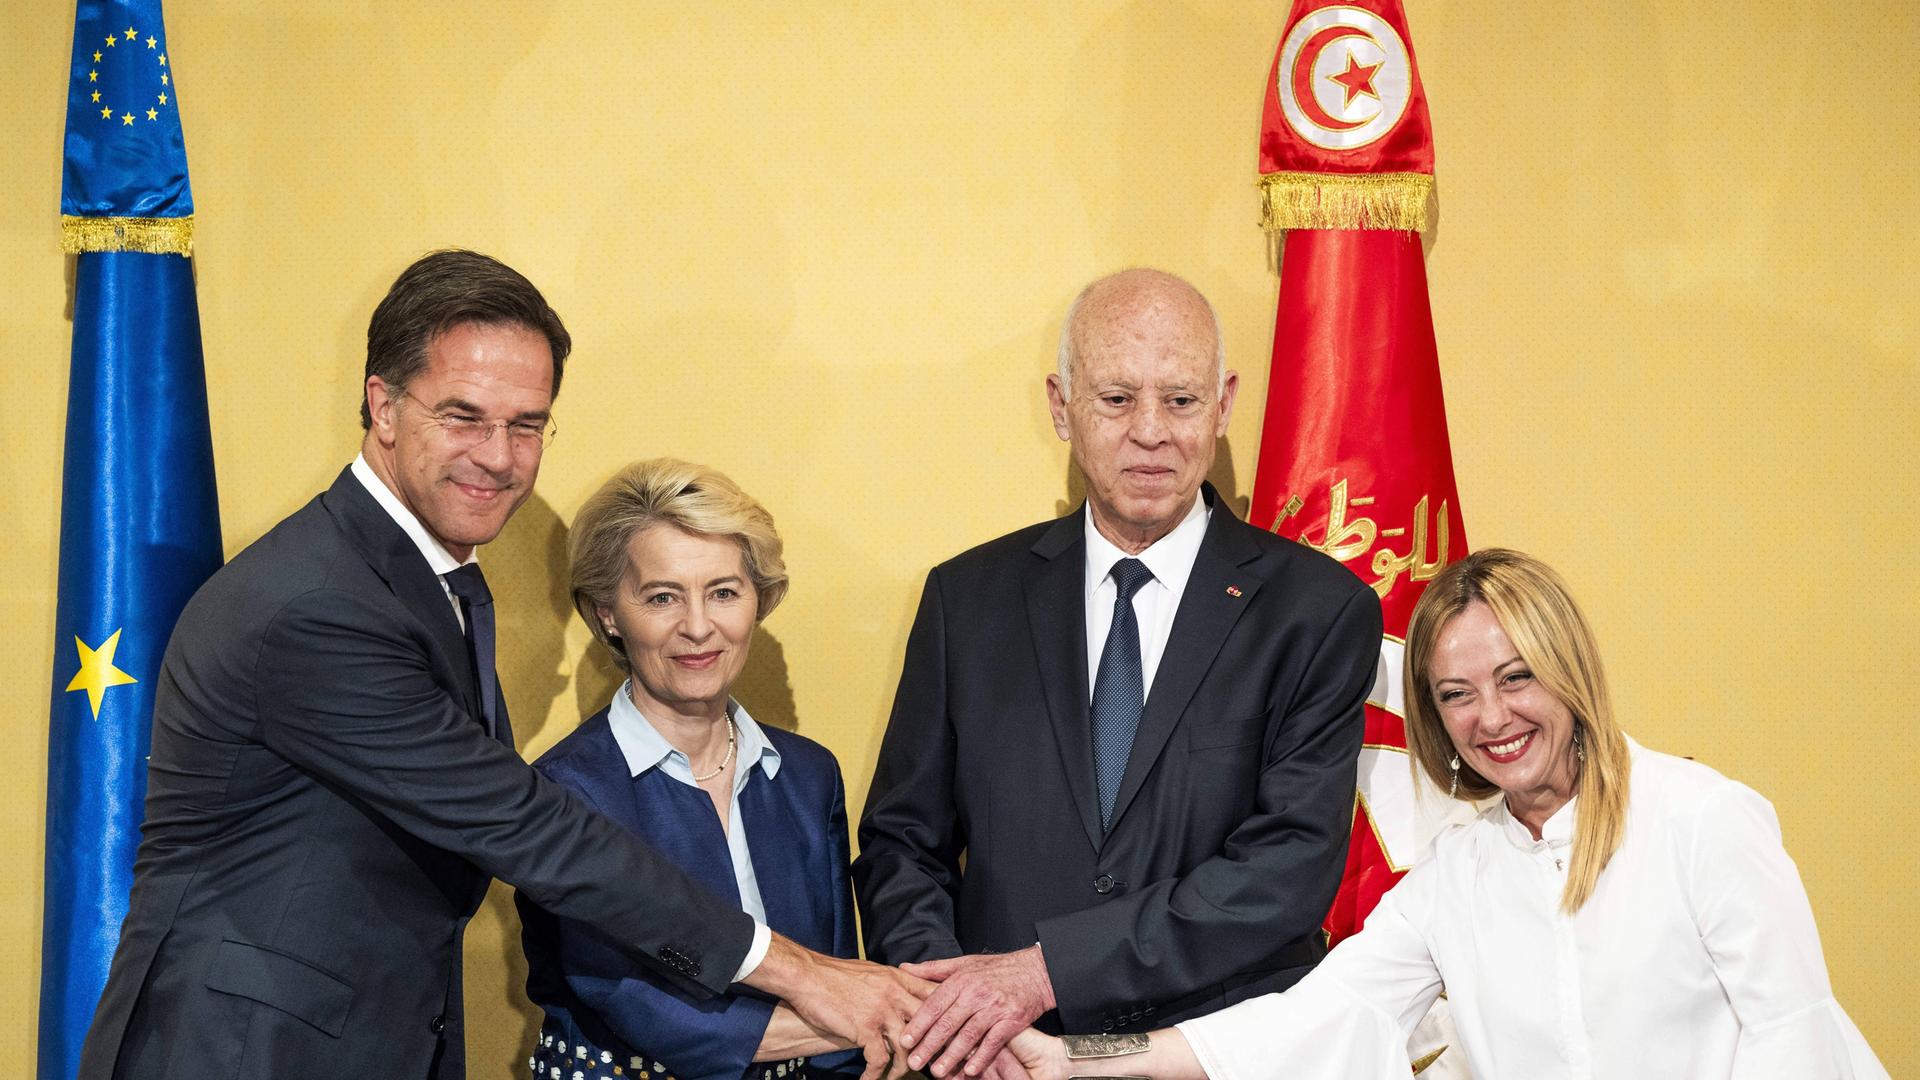 Der scheidenden niederländische Premierminister Mark Rutte, EU-Kommissionspräsidentin Ursula von der Leyen, Tunesiens Präsident Kais Saied und Italiens Premierministerin Giorgia Meloni schütteln nach Unterzeichnung des gemeinsamen Abkommens einander die Hände.